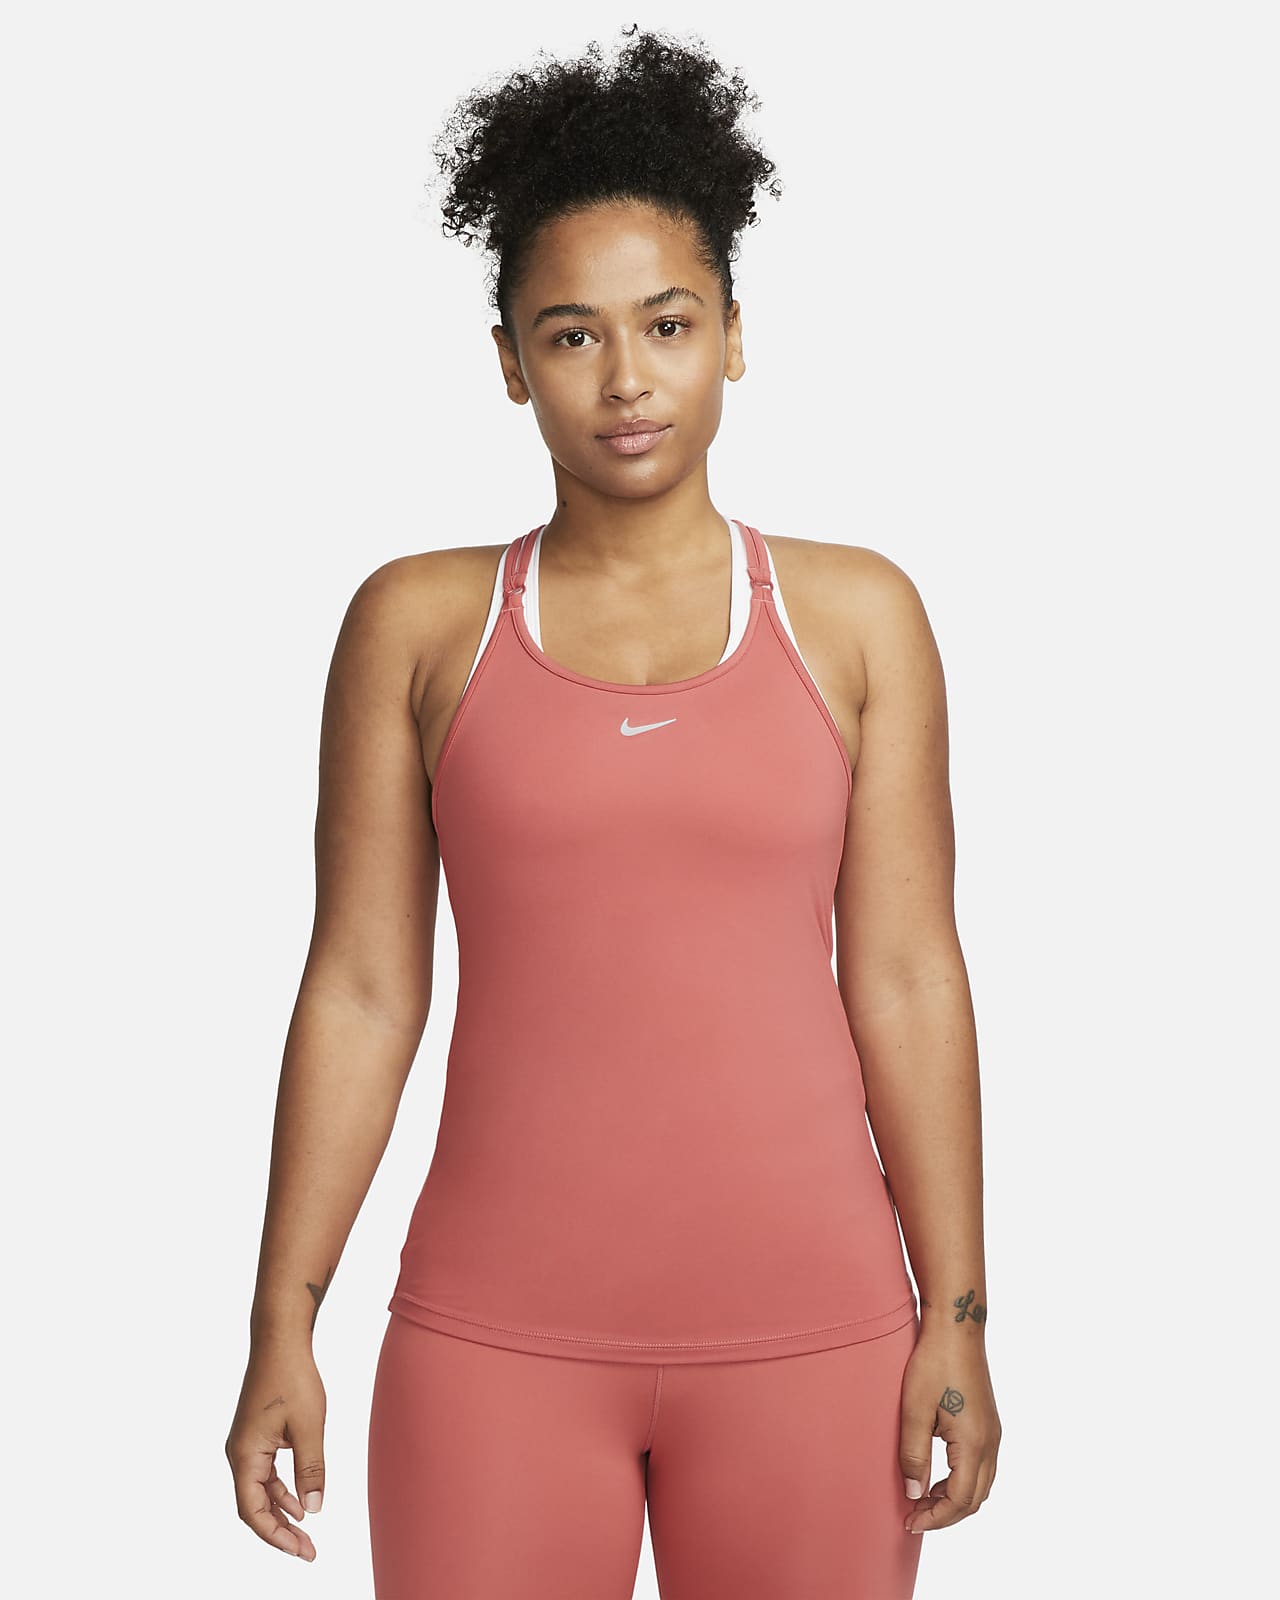 arabisk malt slå Nike Dri-FIT One Luxe Women's Slim Fit Strappy Tank. Nike.com